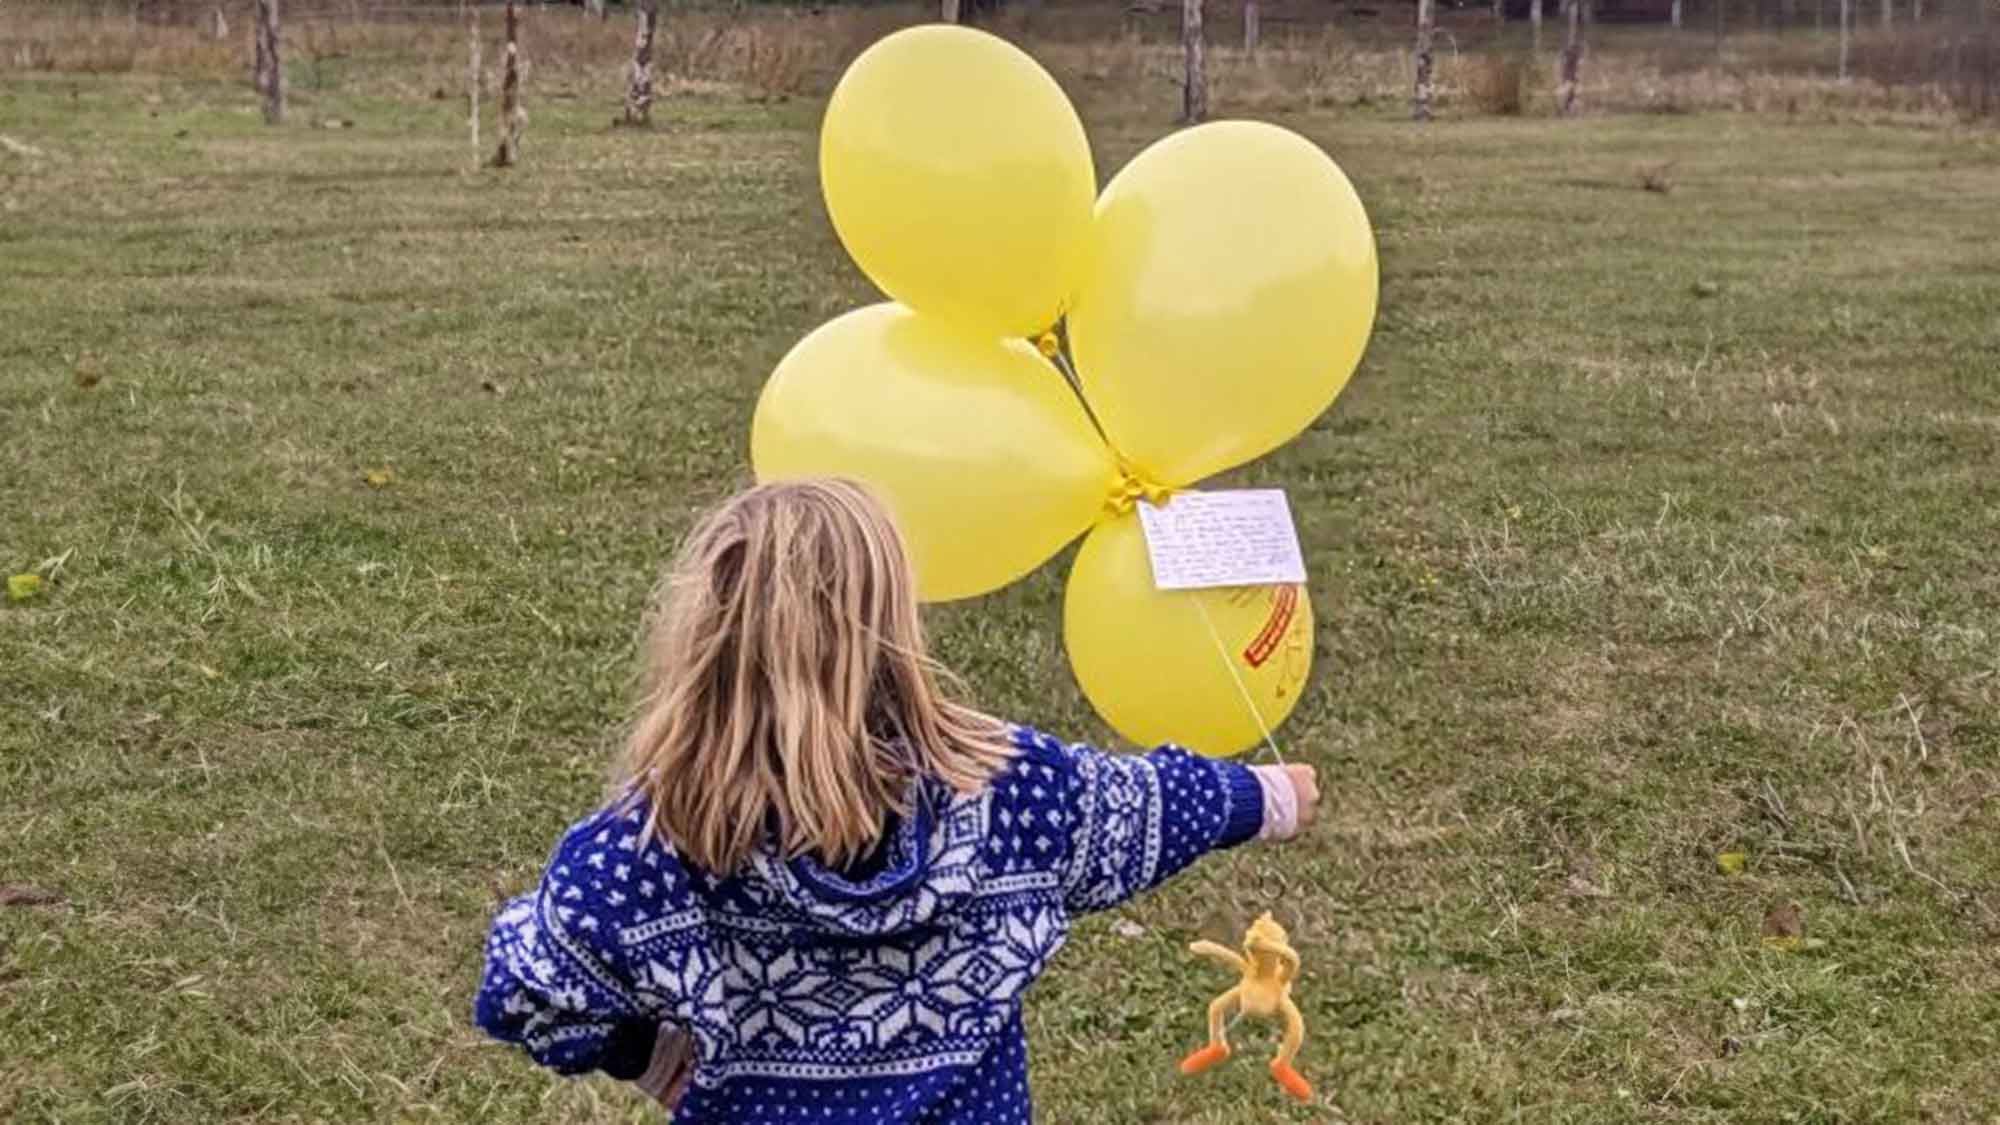 Zum Geburtstag ein Freiflug am Heliumballon: Die kleine Sekunde startet durch